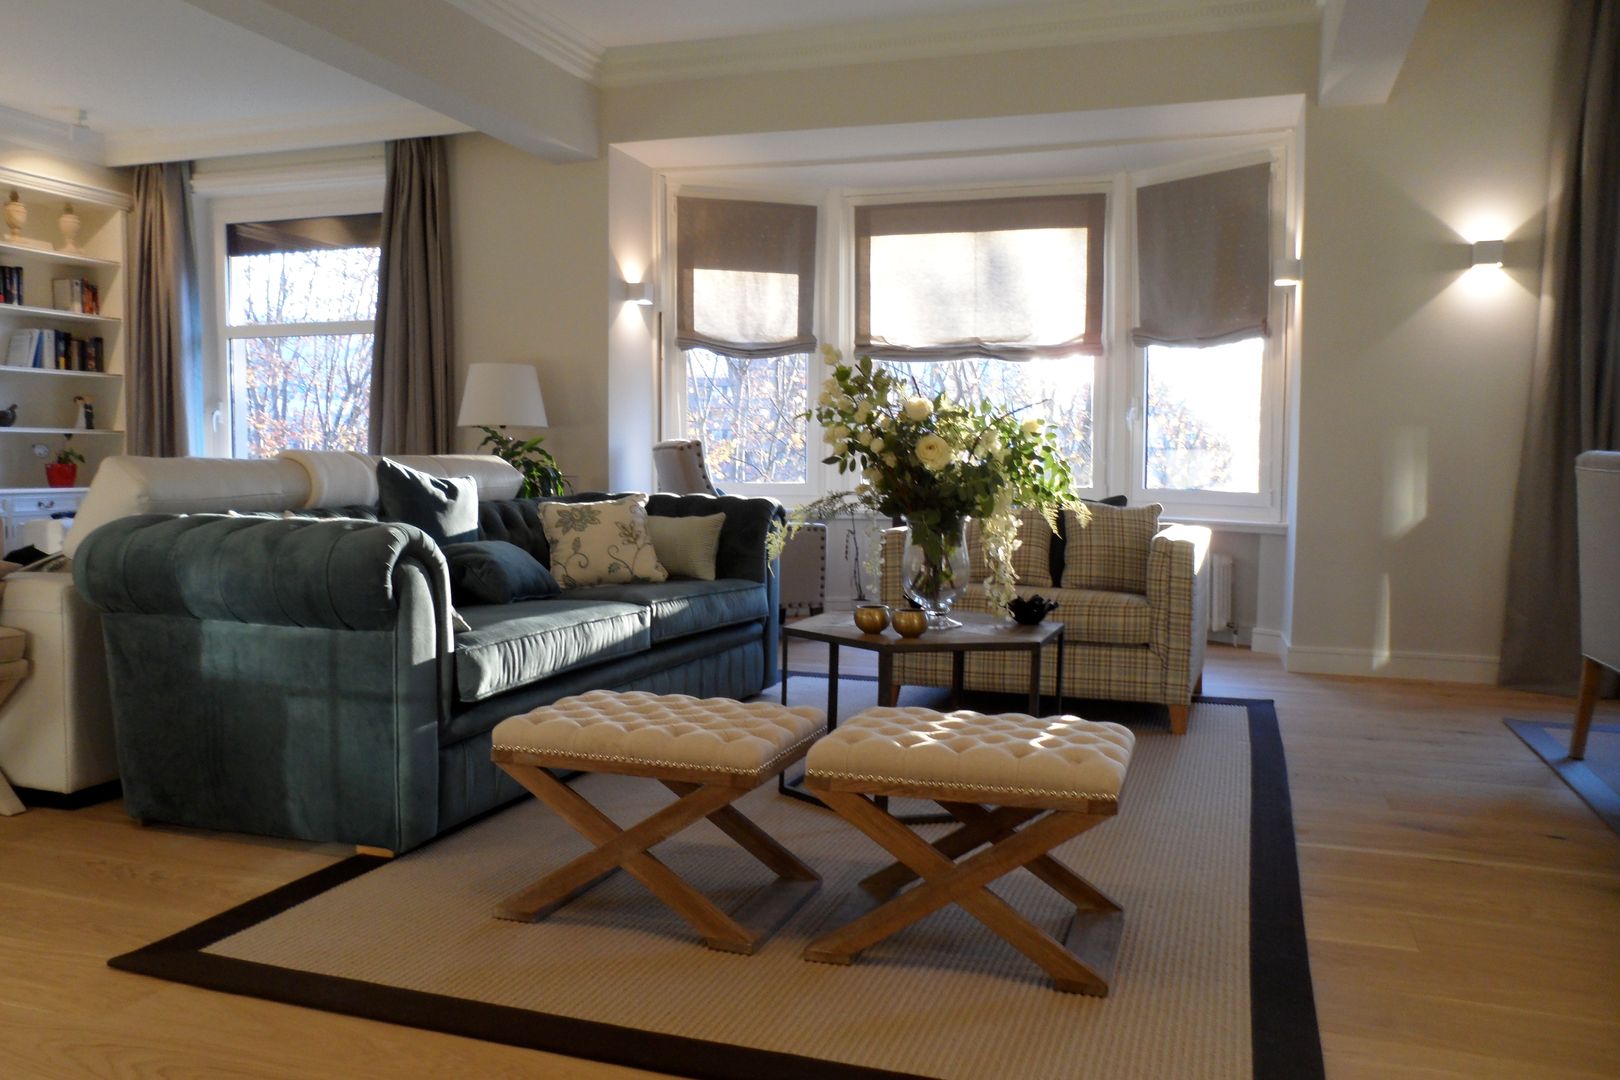 Decoración de salón en tonos beigs y azul turquesa Sube Interiorismo Salones de estilo clásico sofá cómodo,mesa auxiliar,suelo de madera,alfombra